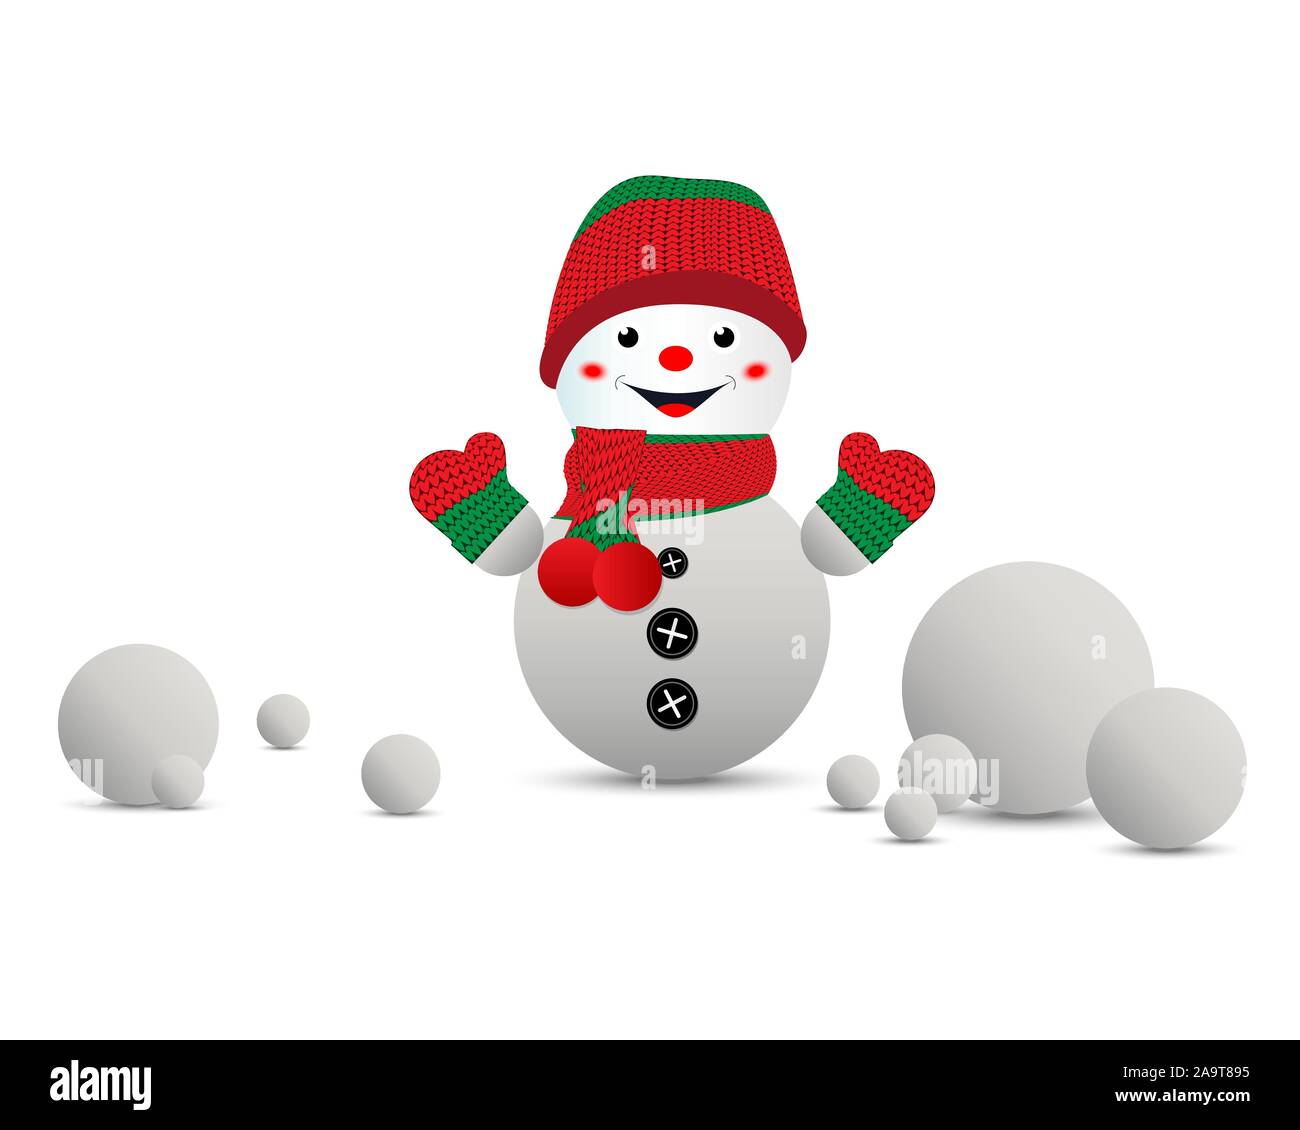 Cartoon muñeco de nieve en un gorro de punto rojo-verde y manoplas. Fondo blanco, aislado. Ilustración vectorial. Ilustración del Vector